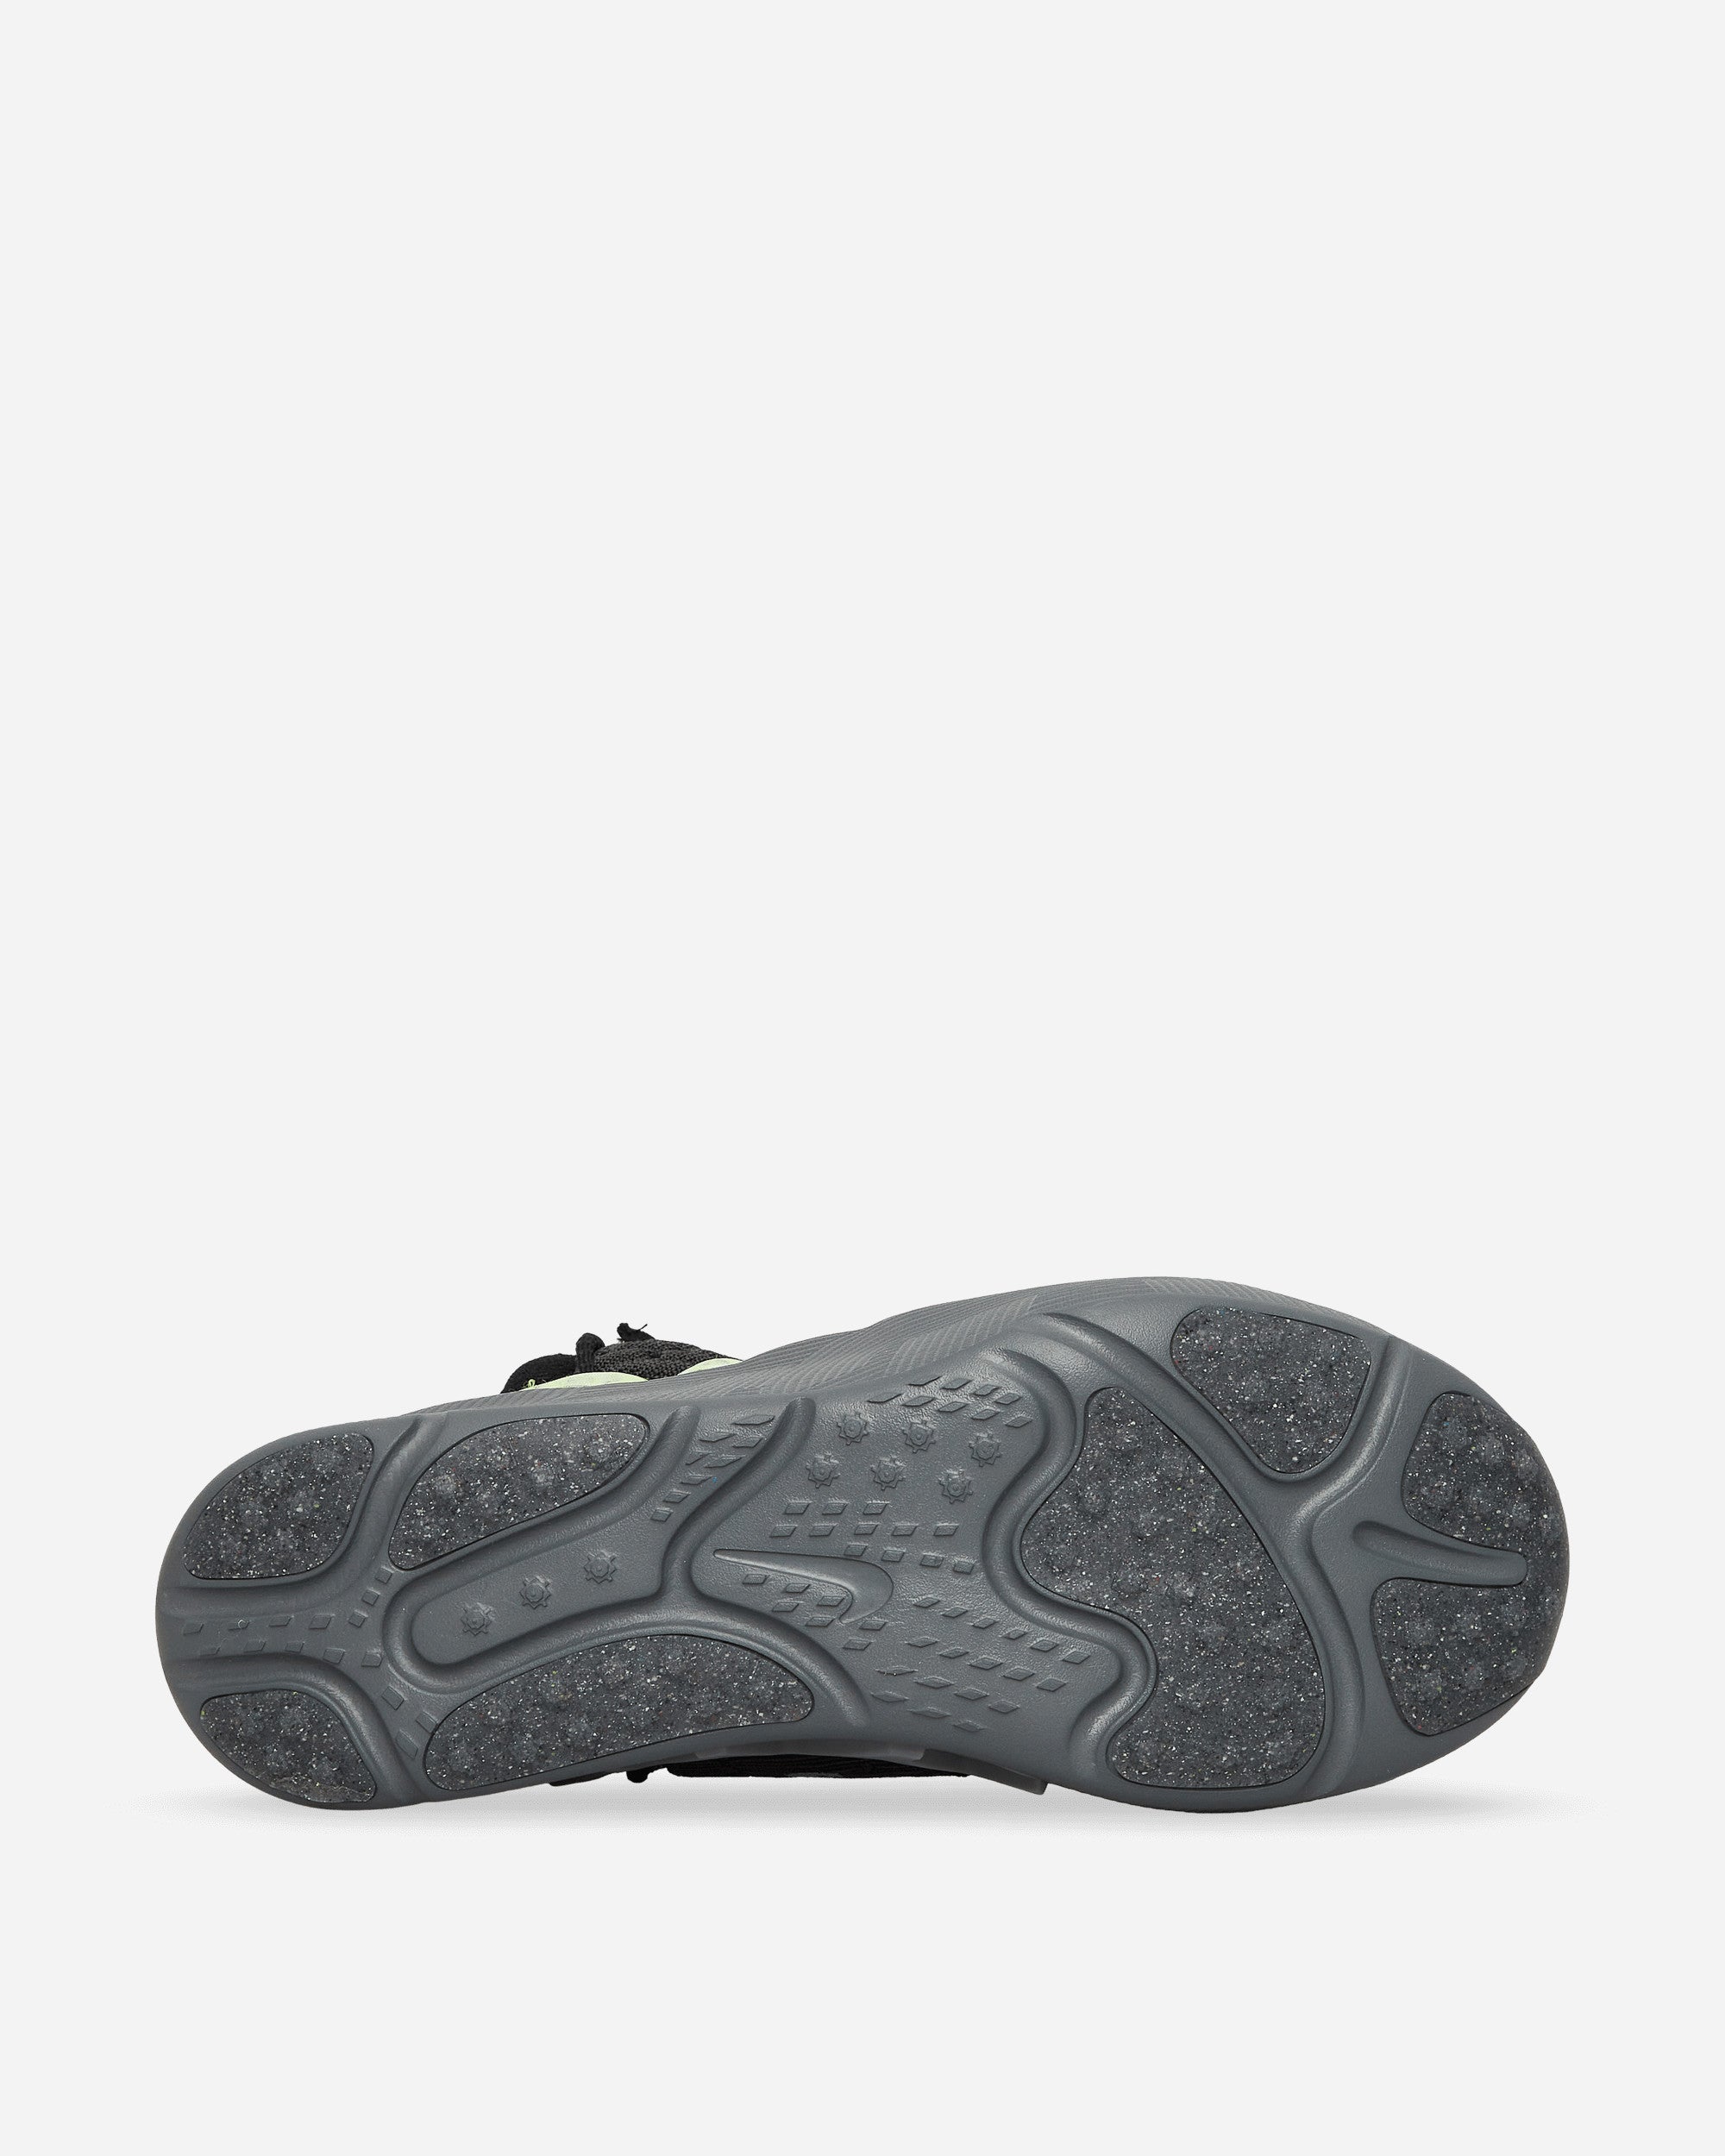 Nike Ispa Sense Flyknit Black/Seafoam-Smoke Grey Sneakers High CW3203-003